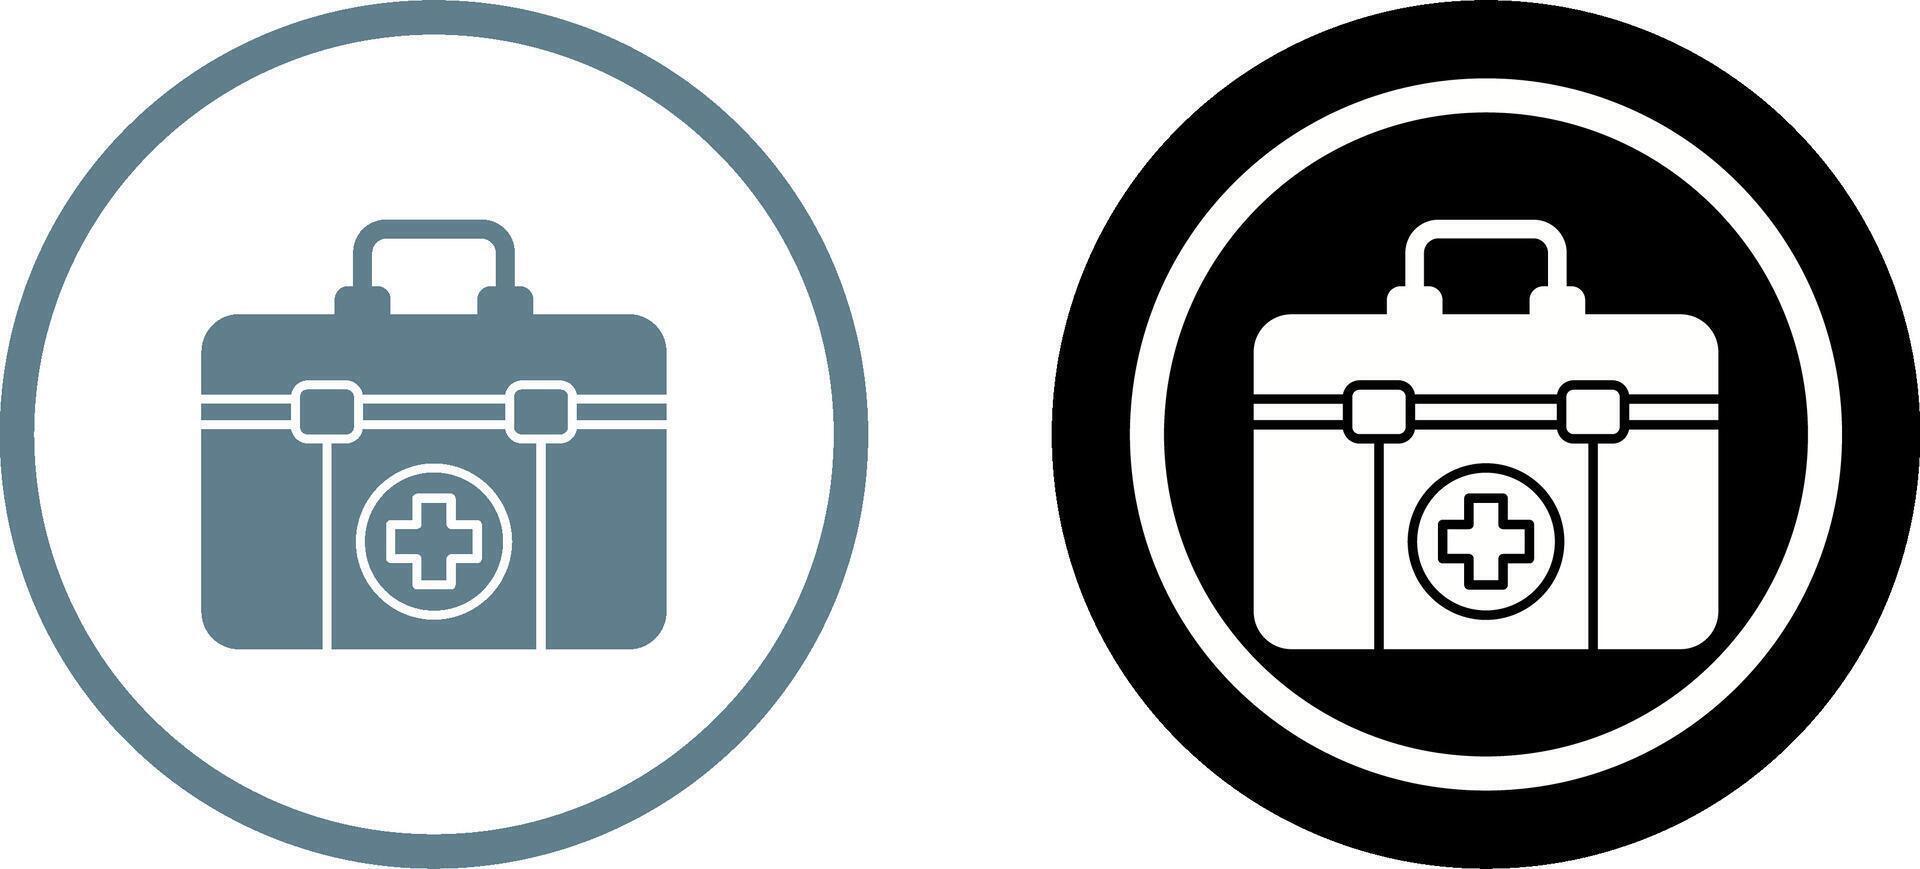 design de ícone do kit de primeiros socorros vetor